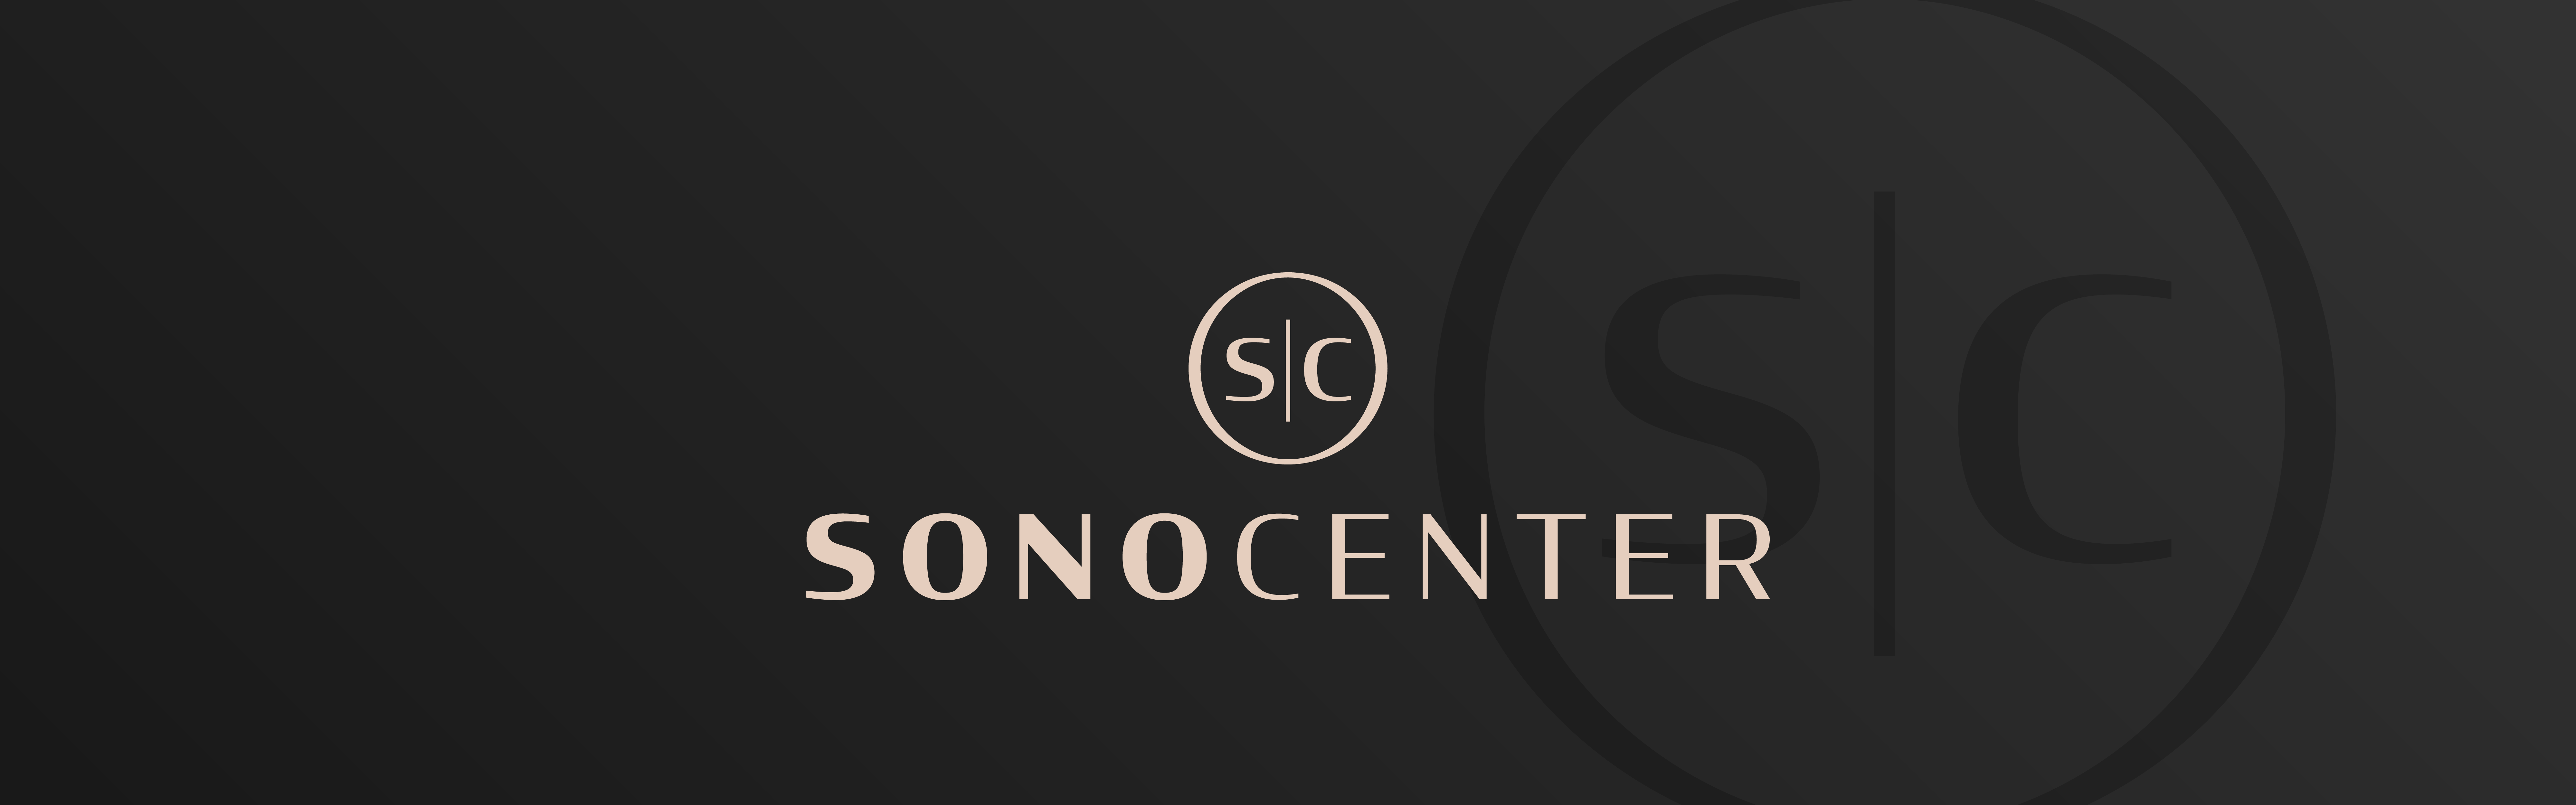 Sono Center logo design